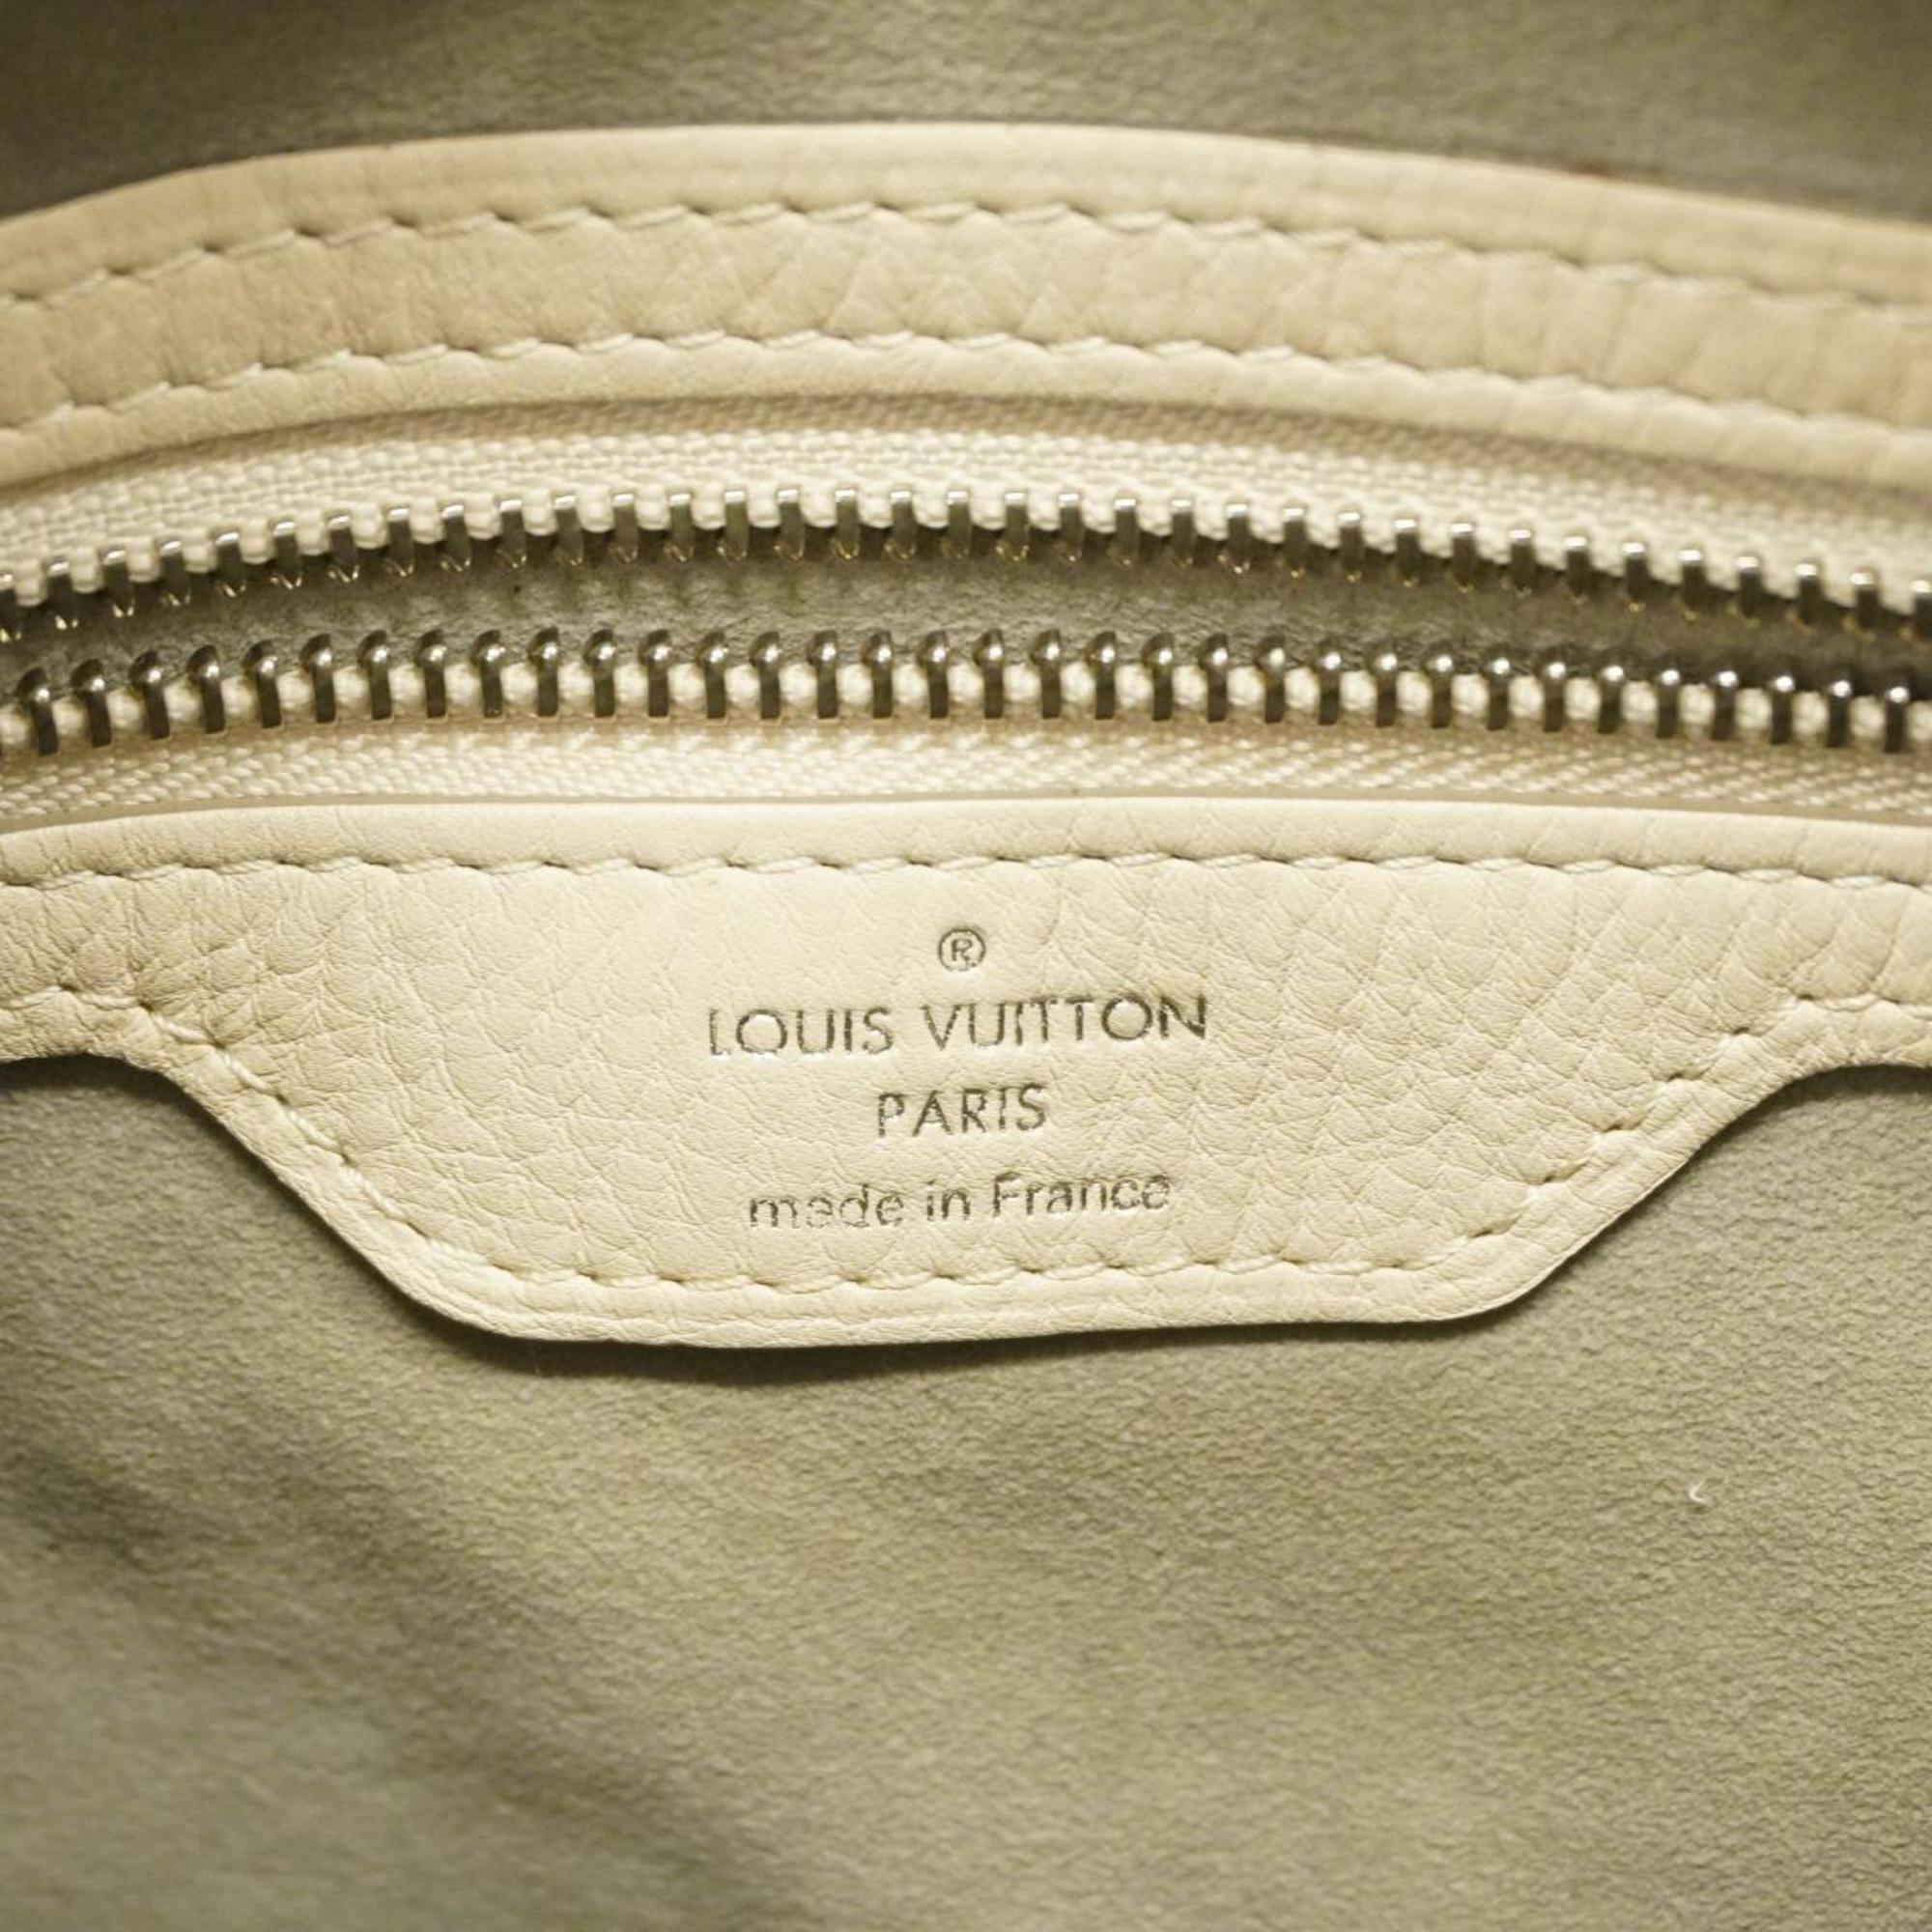 ルイ・ヴィトン(Louis Vuitton) ルイ・ヴィトン ハンドバッグ マヒナ セレネPM M94275 ブロンレディース